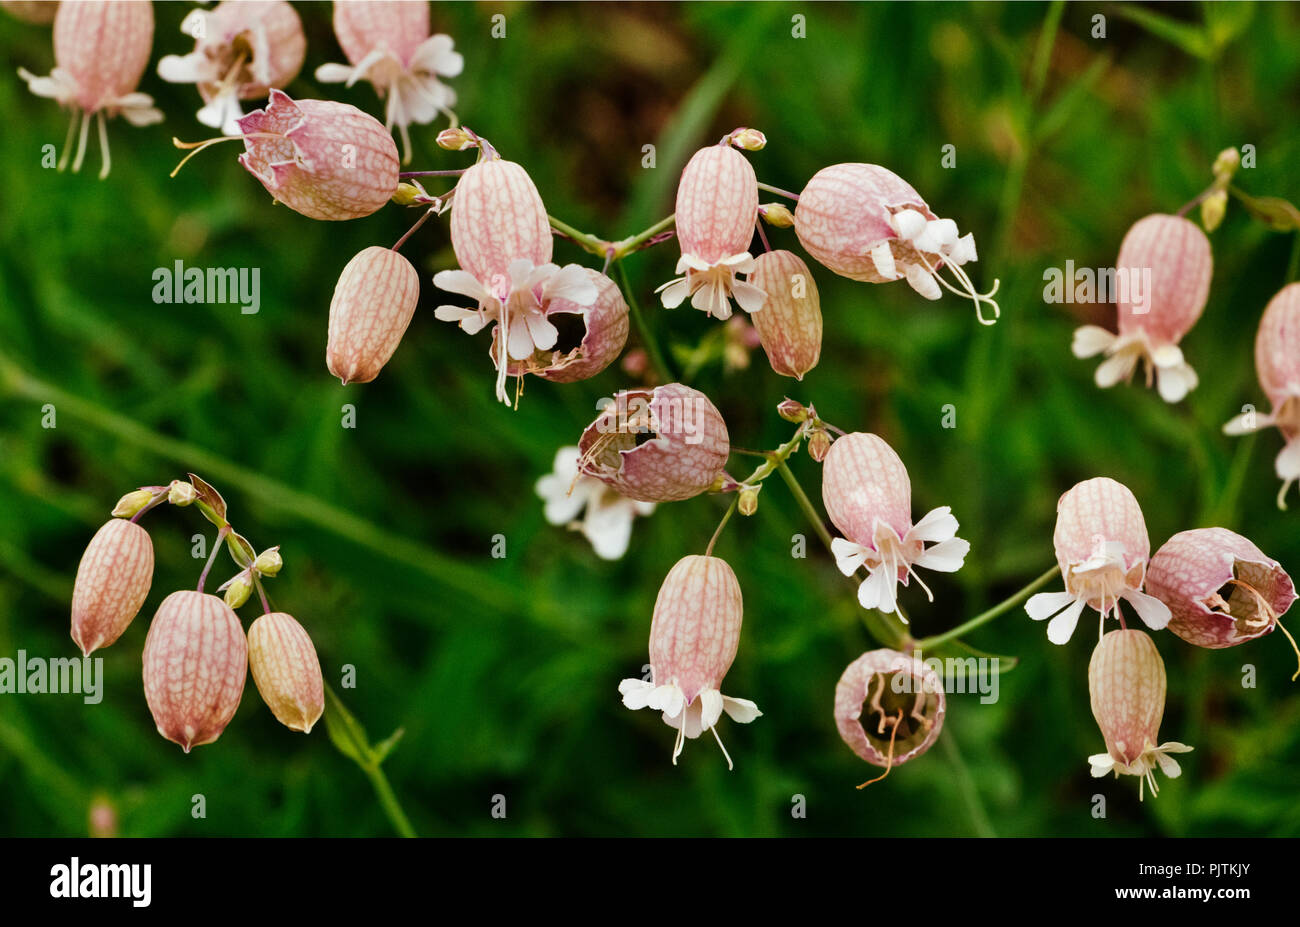 Blase Campion oder silene vulgaris Blumen in ein Feld, eine weiße Blume auf einem rötlichen Kelch in einem grünen und Hintergrund Stockfoto